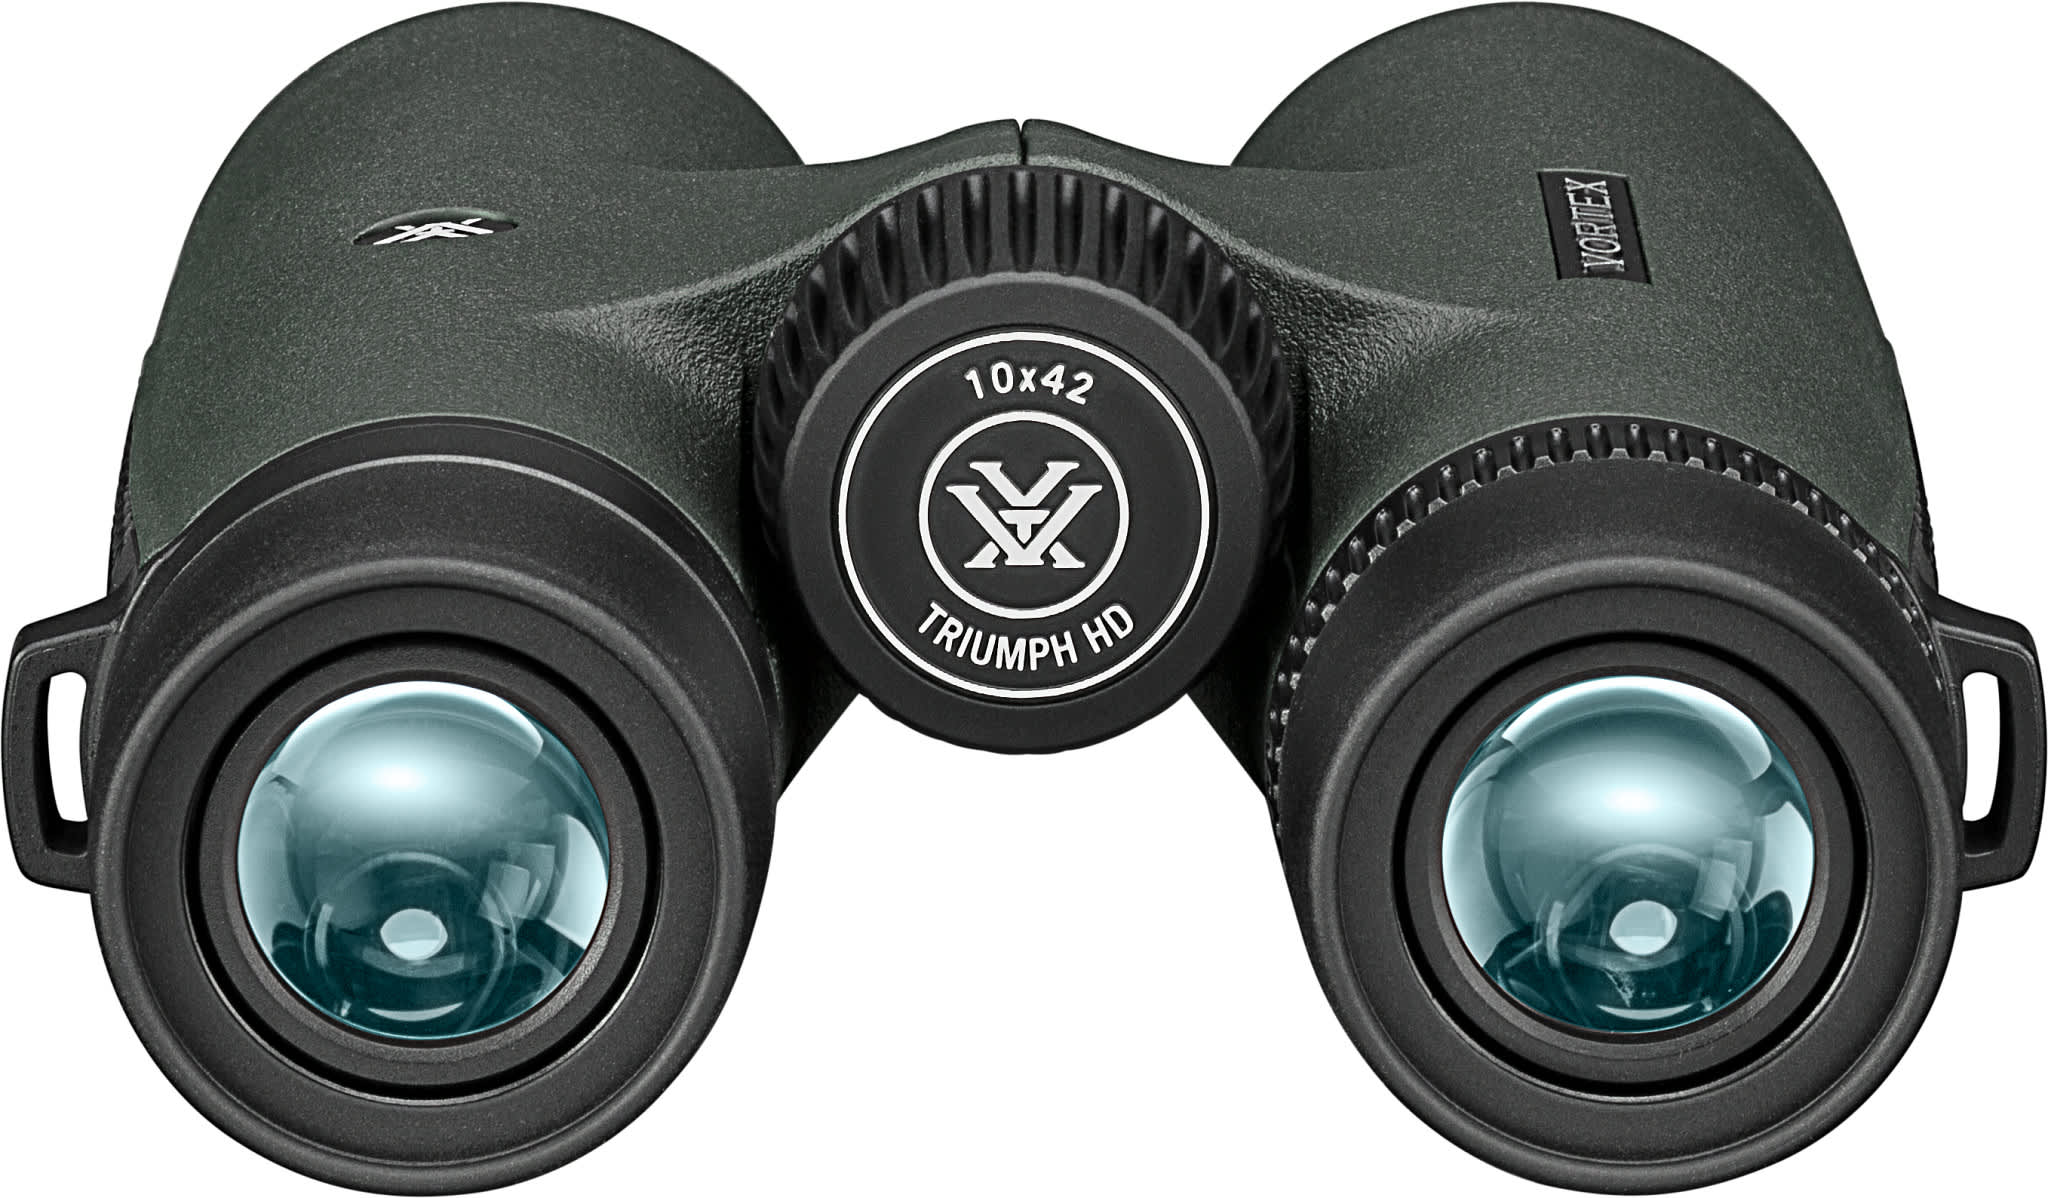 Vortex® Triumph® HD 10x42 Binoculars | Cabela's Canada